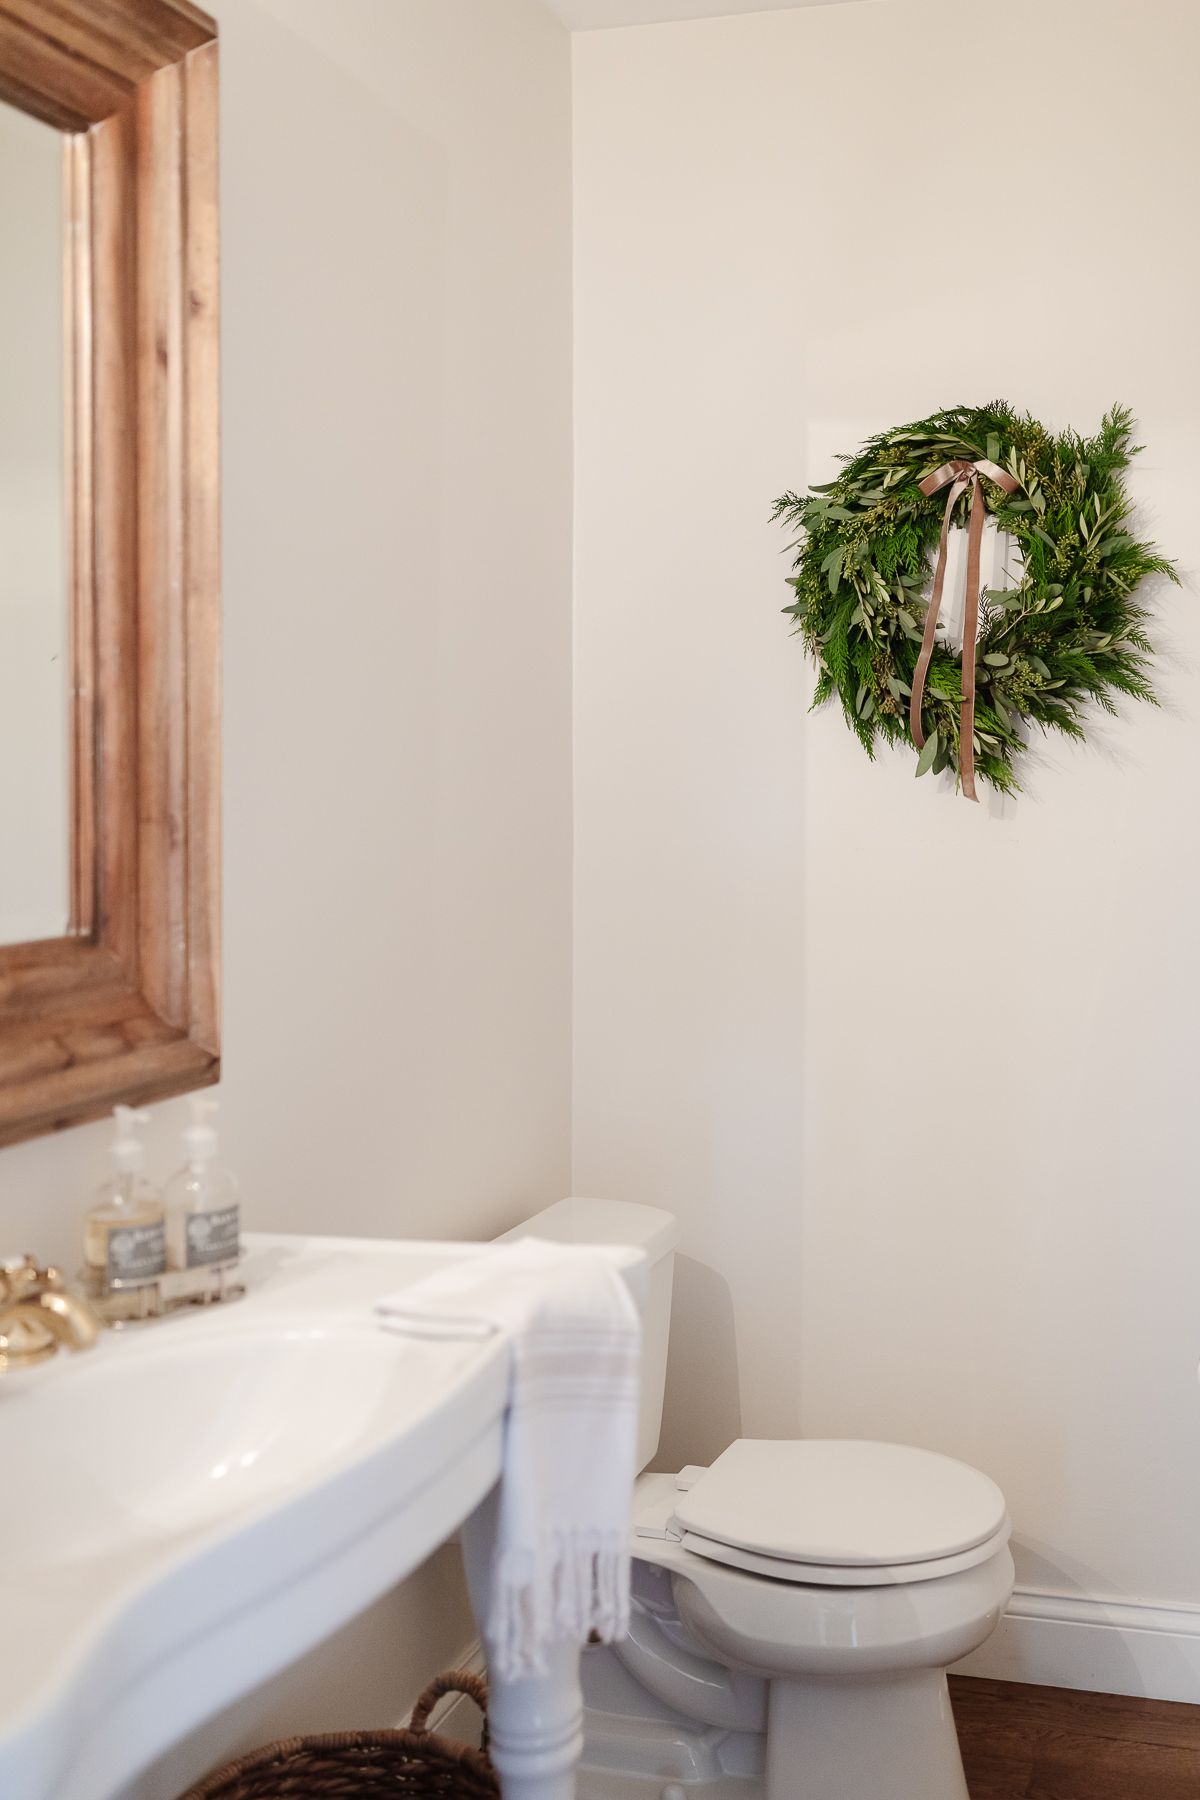 a bathroom with a fresh wreath on the wall